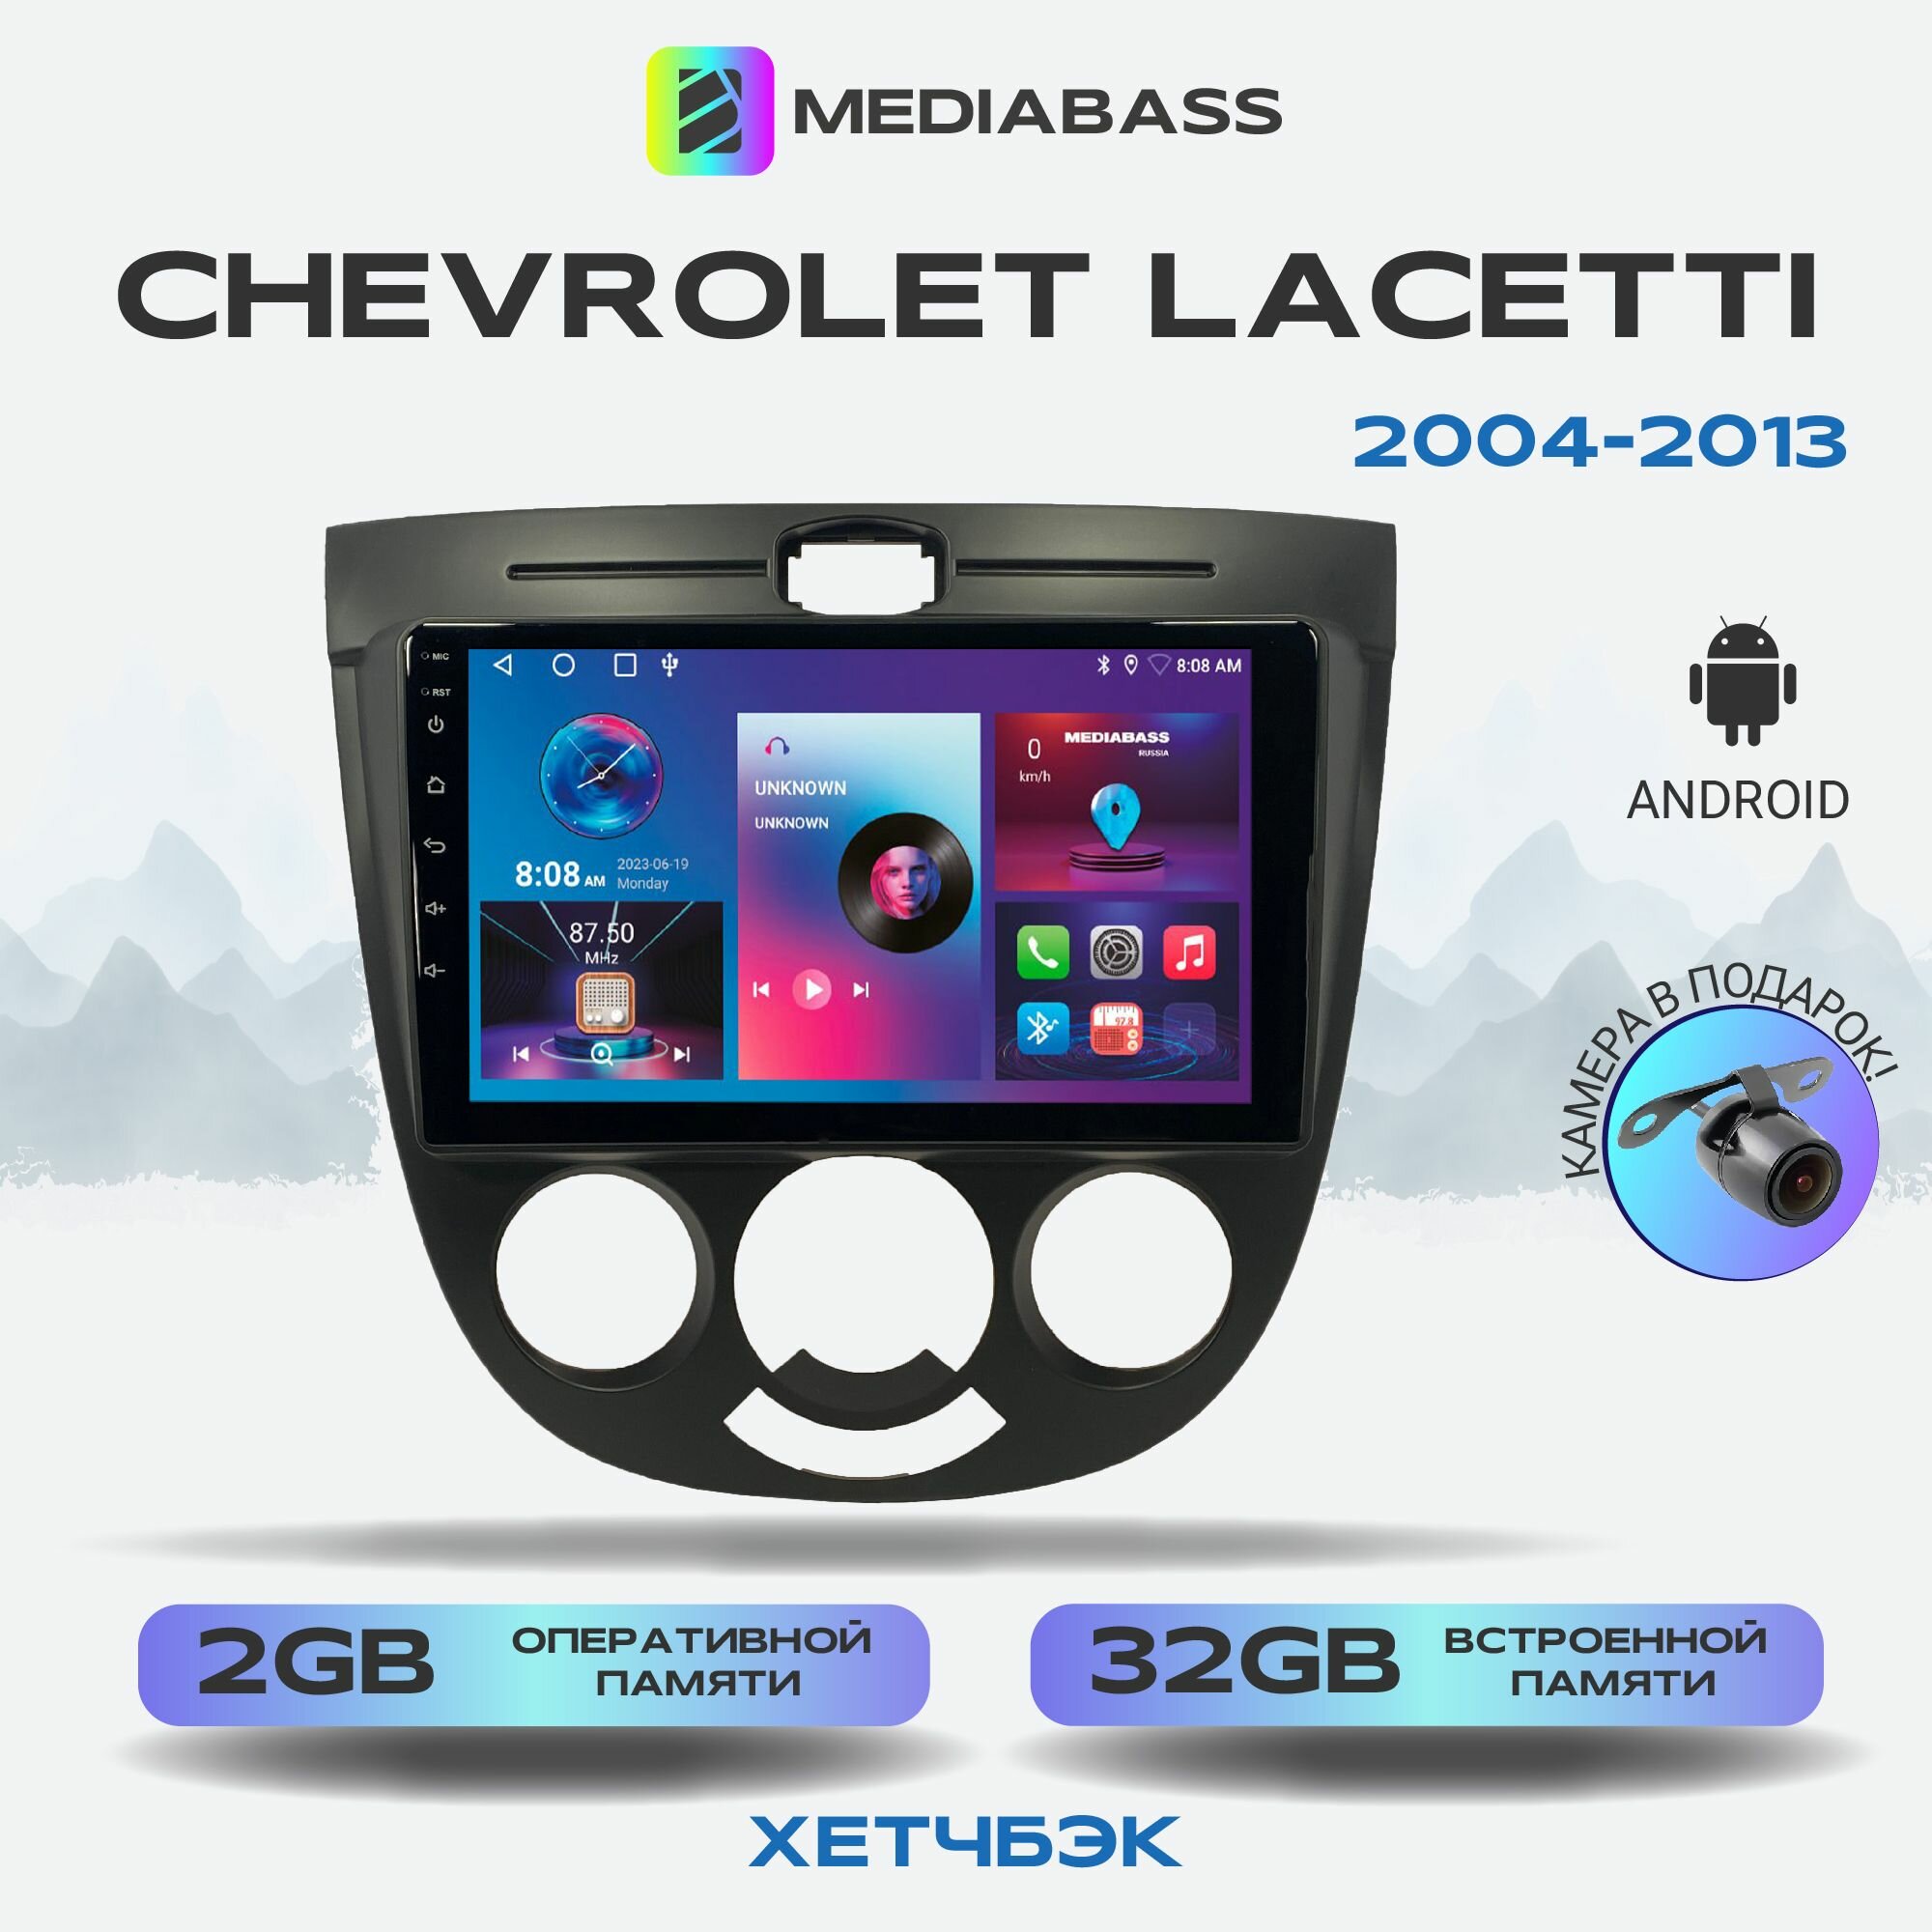 Автомагнитола Mediabass Chevrolet Lacetti хетчбэк, Android 12, 2/32ГБ, 4-ядерный процессор, QLED экран с разрешением 1280*720, чип-усилитель YD7388 / Шевроле Лачетти хетчбэк